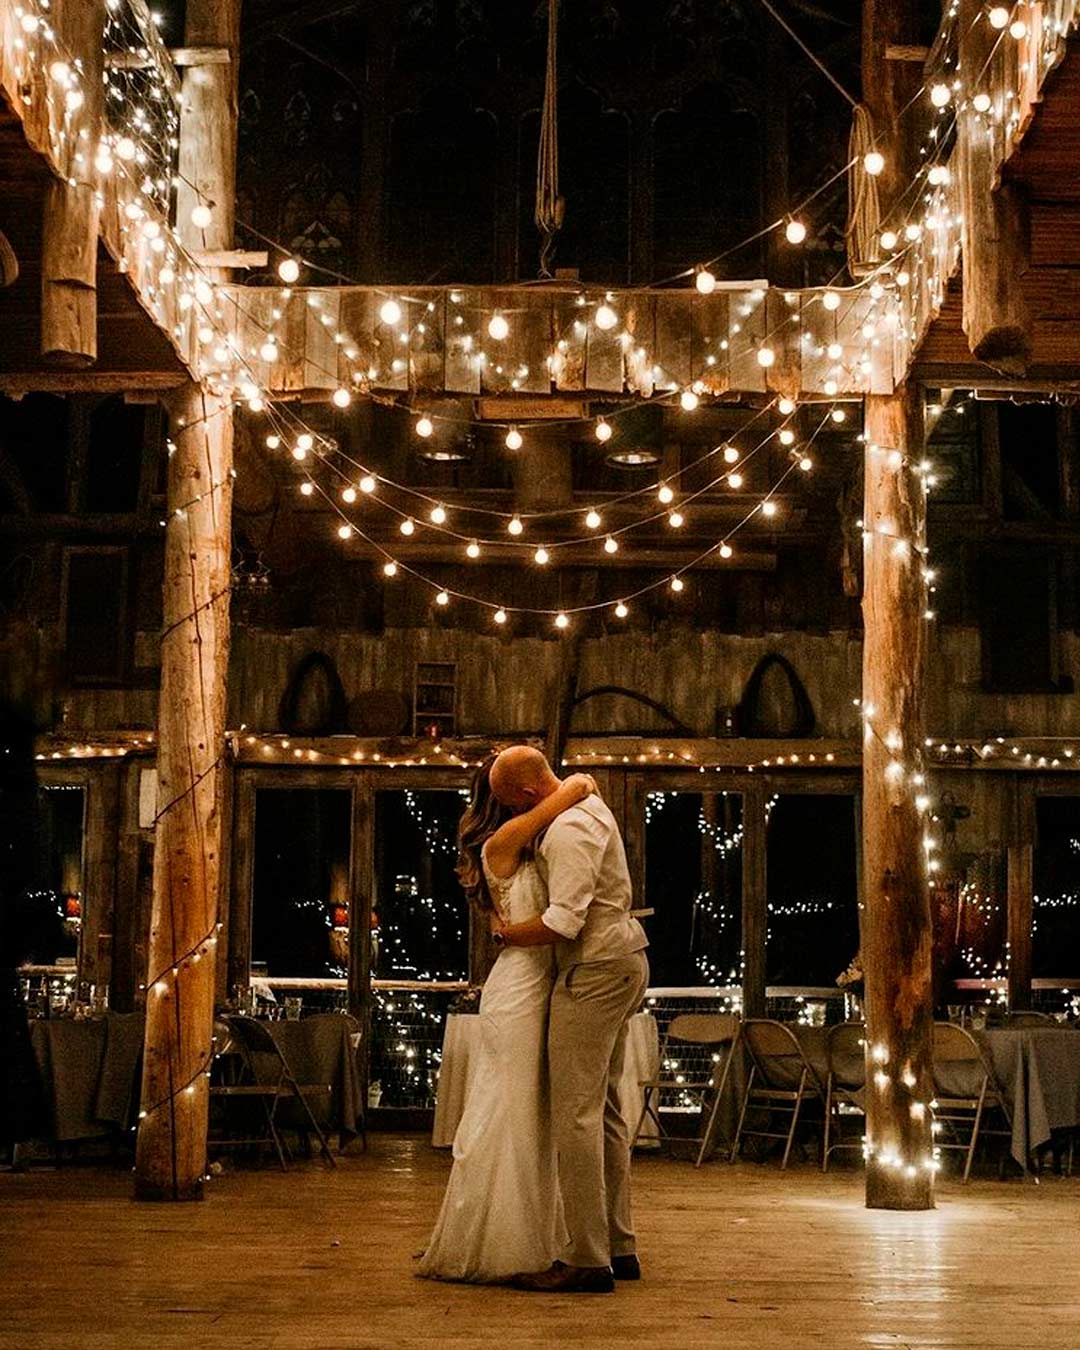 barn wedding venues indoor lights